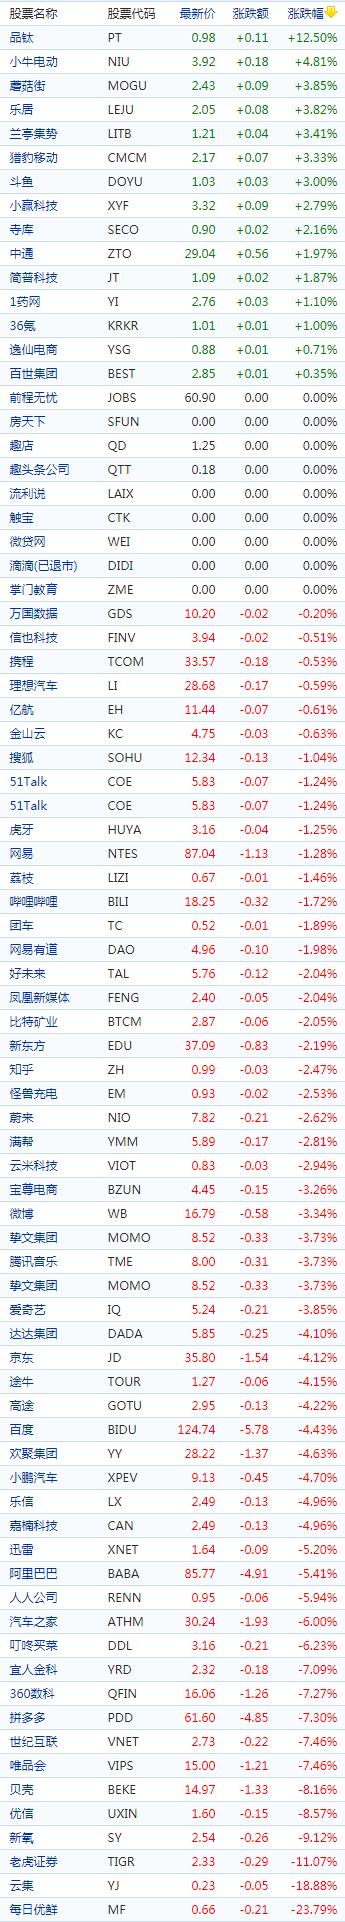 中国概念股收盘：每日优鲜跌超23％，阿里绩后跌超5%、拼多多跌超7%